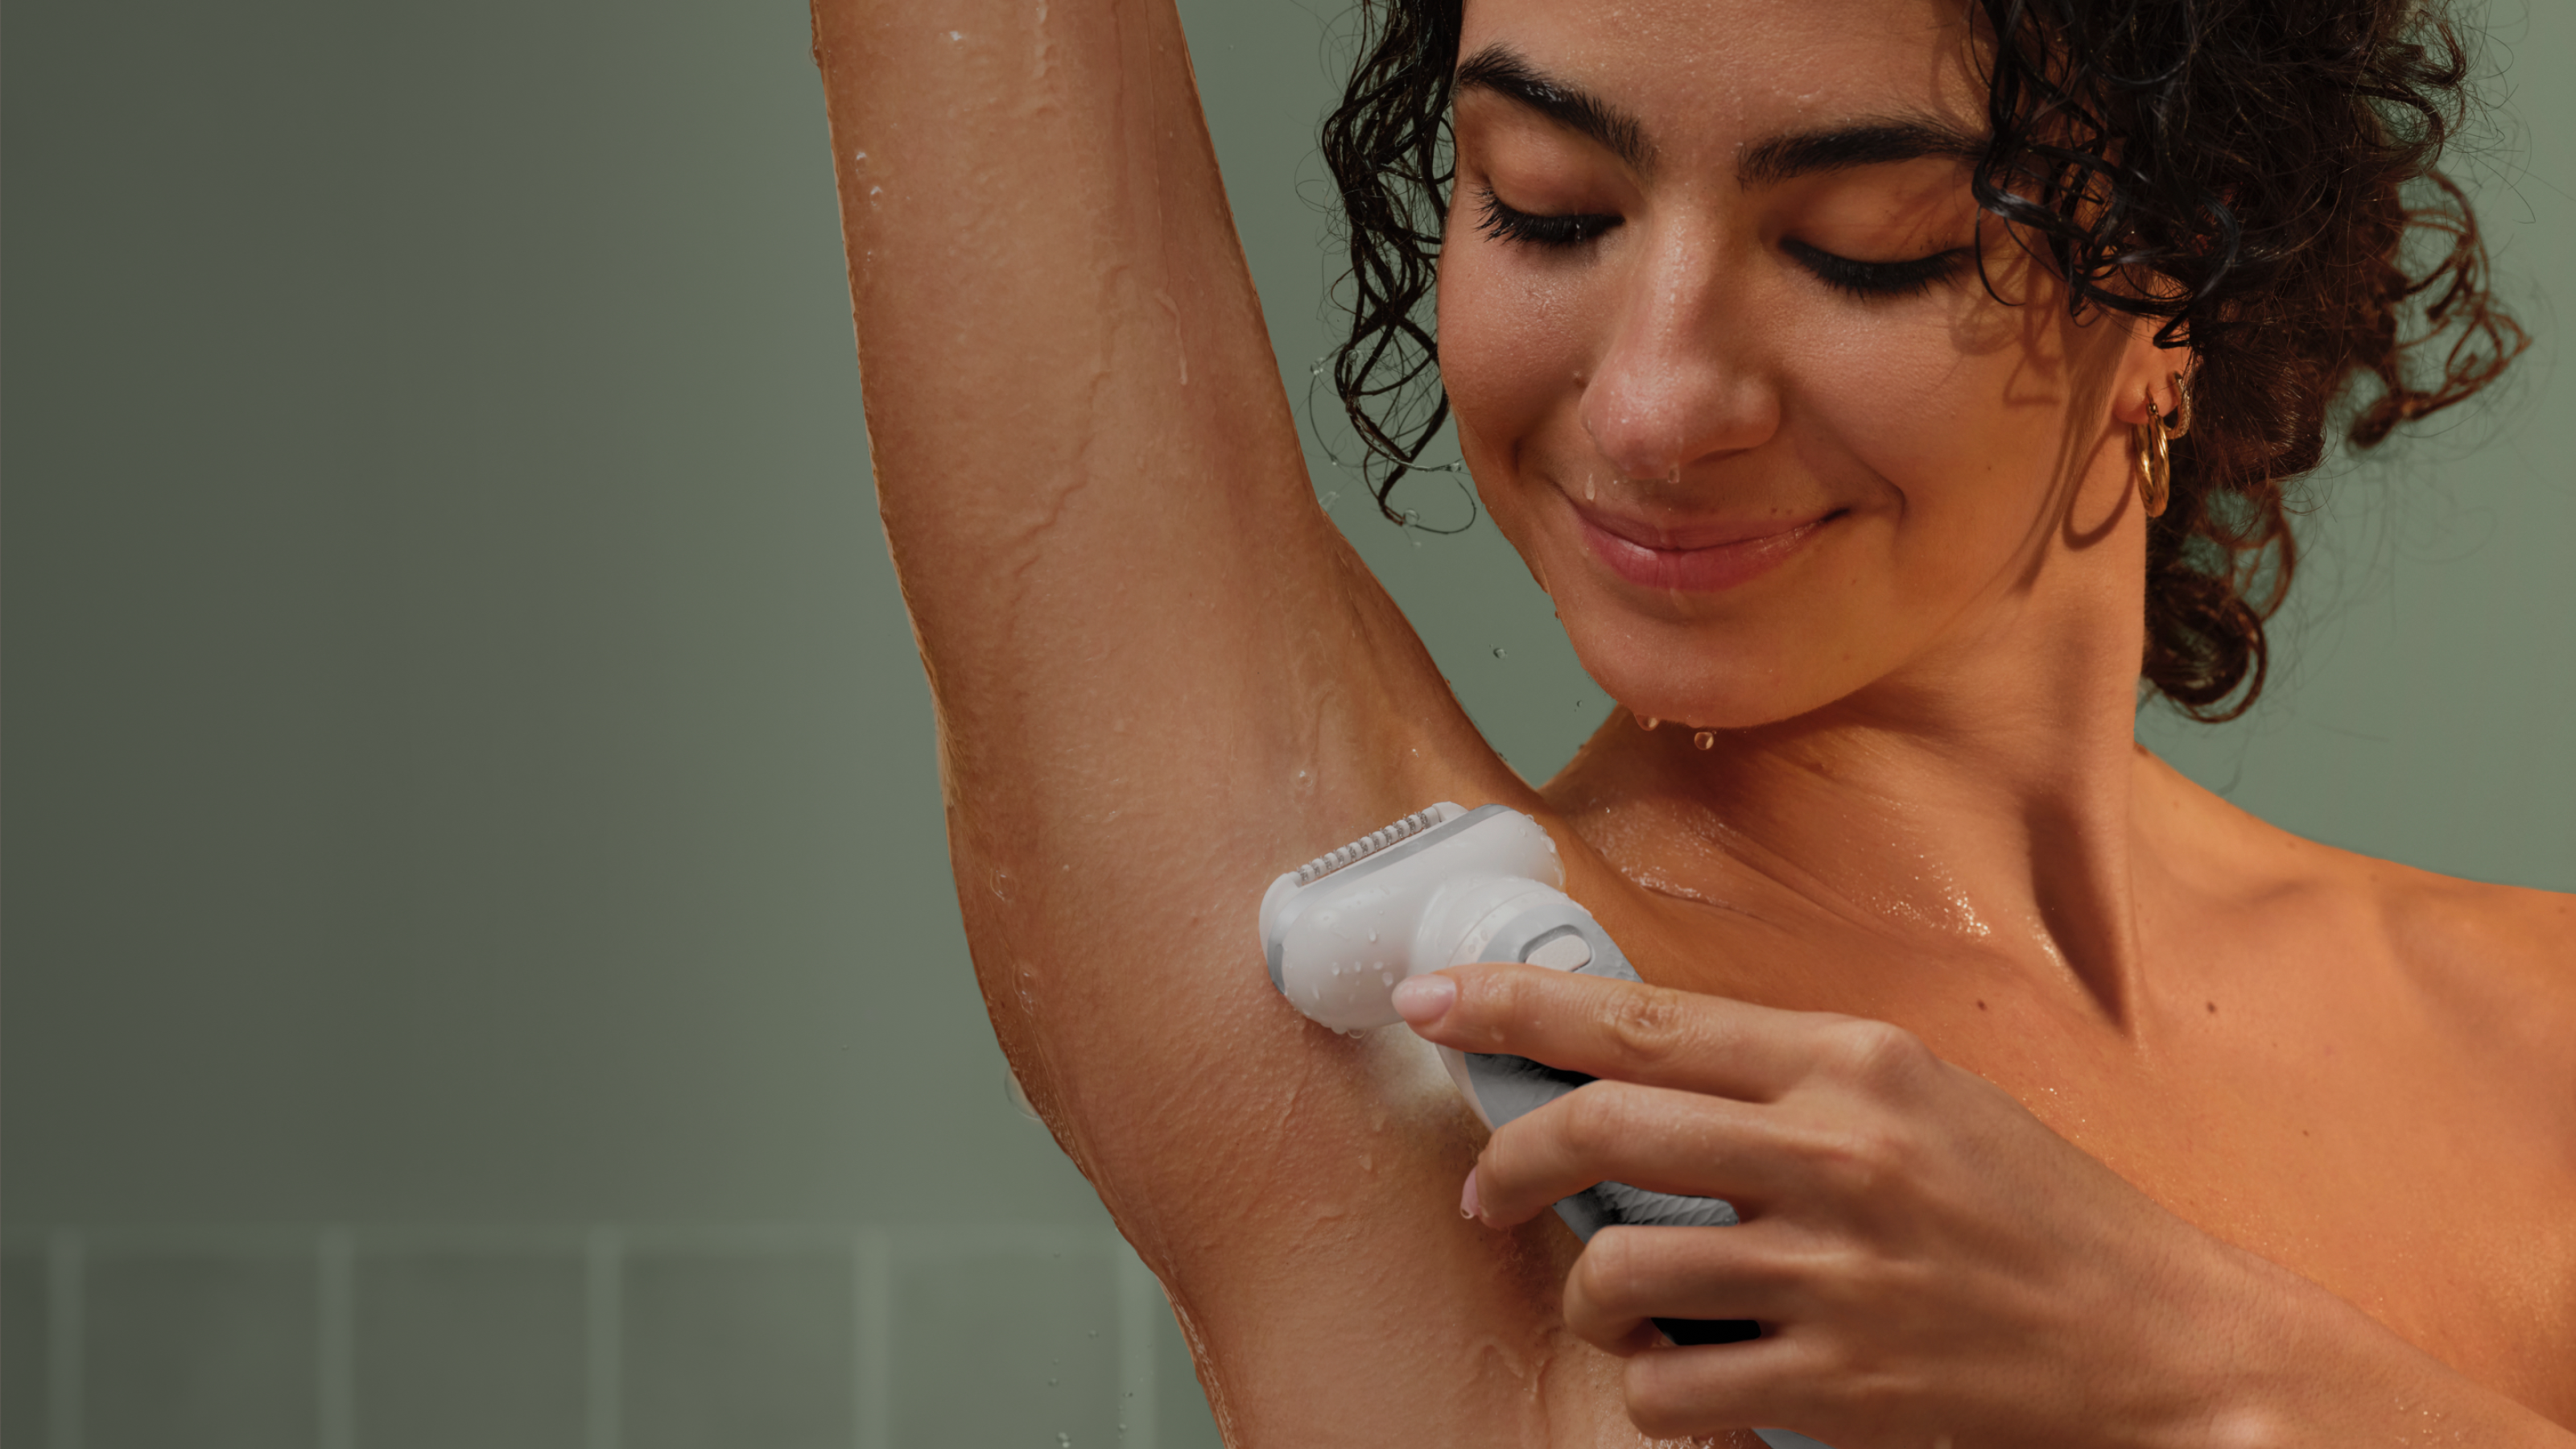 Kvinna som använder epilator under armarna med vatten rinnande längs armen.